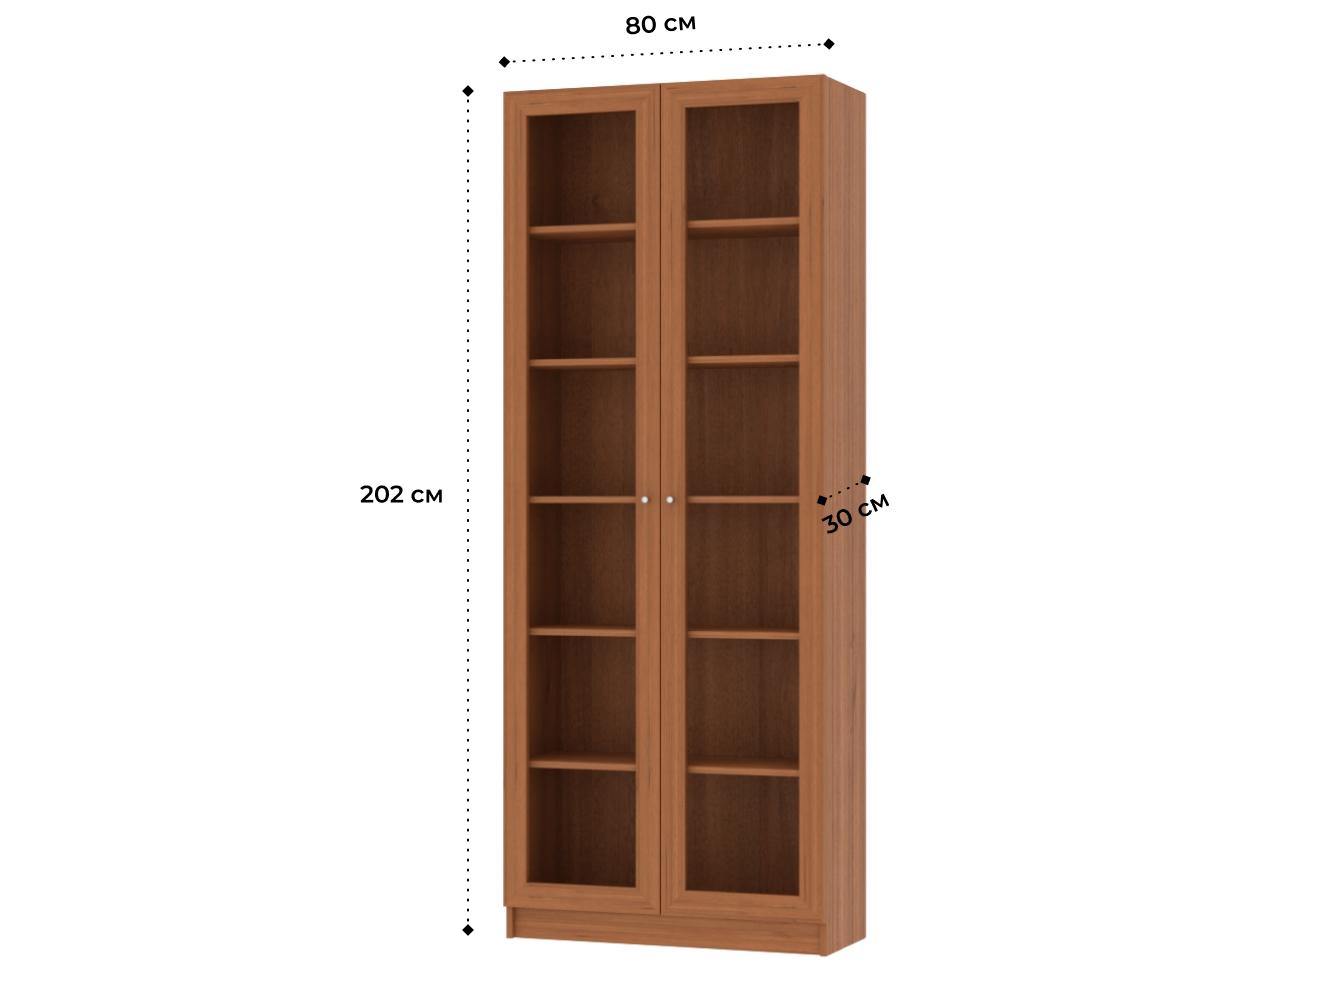 Изображение товара Книжный шкаф Билли 20 walnut guarneri ИКЕА (IKEA), 80x30x202 см на сайте adeta.ru